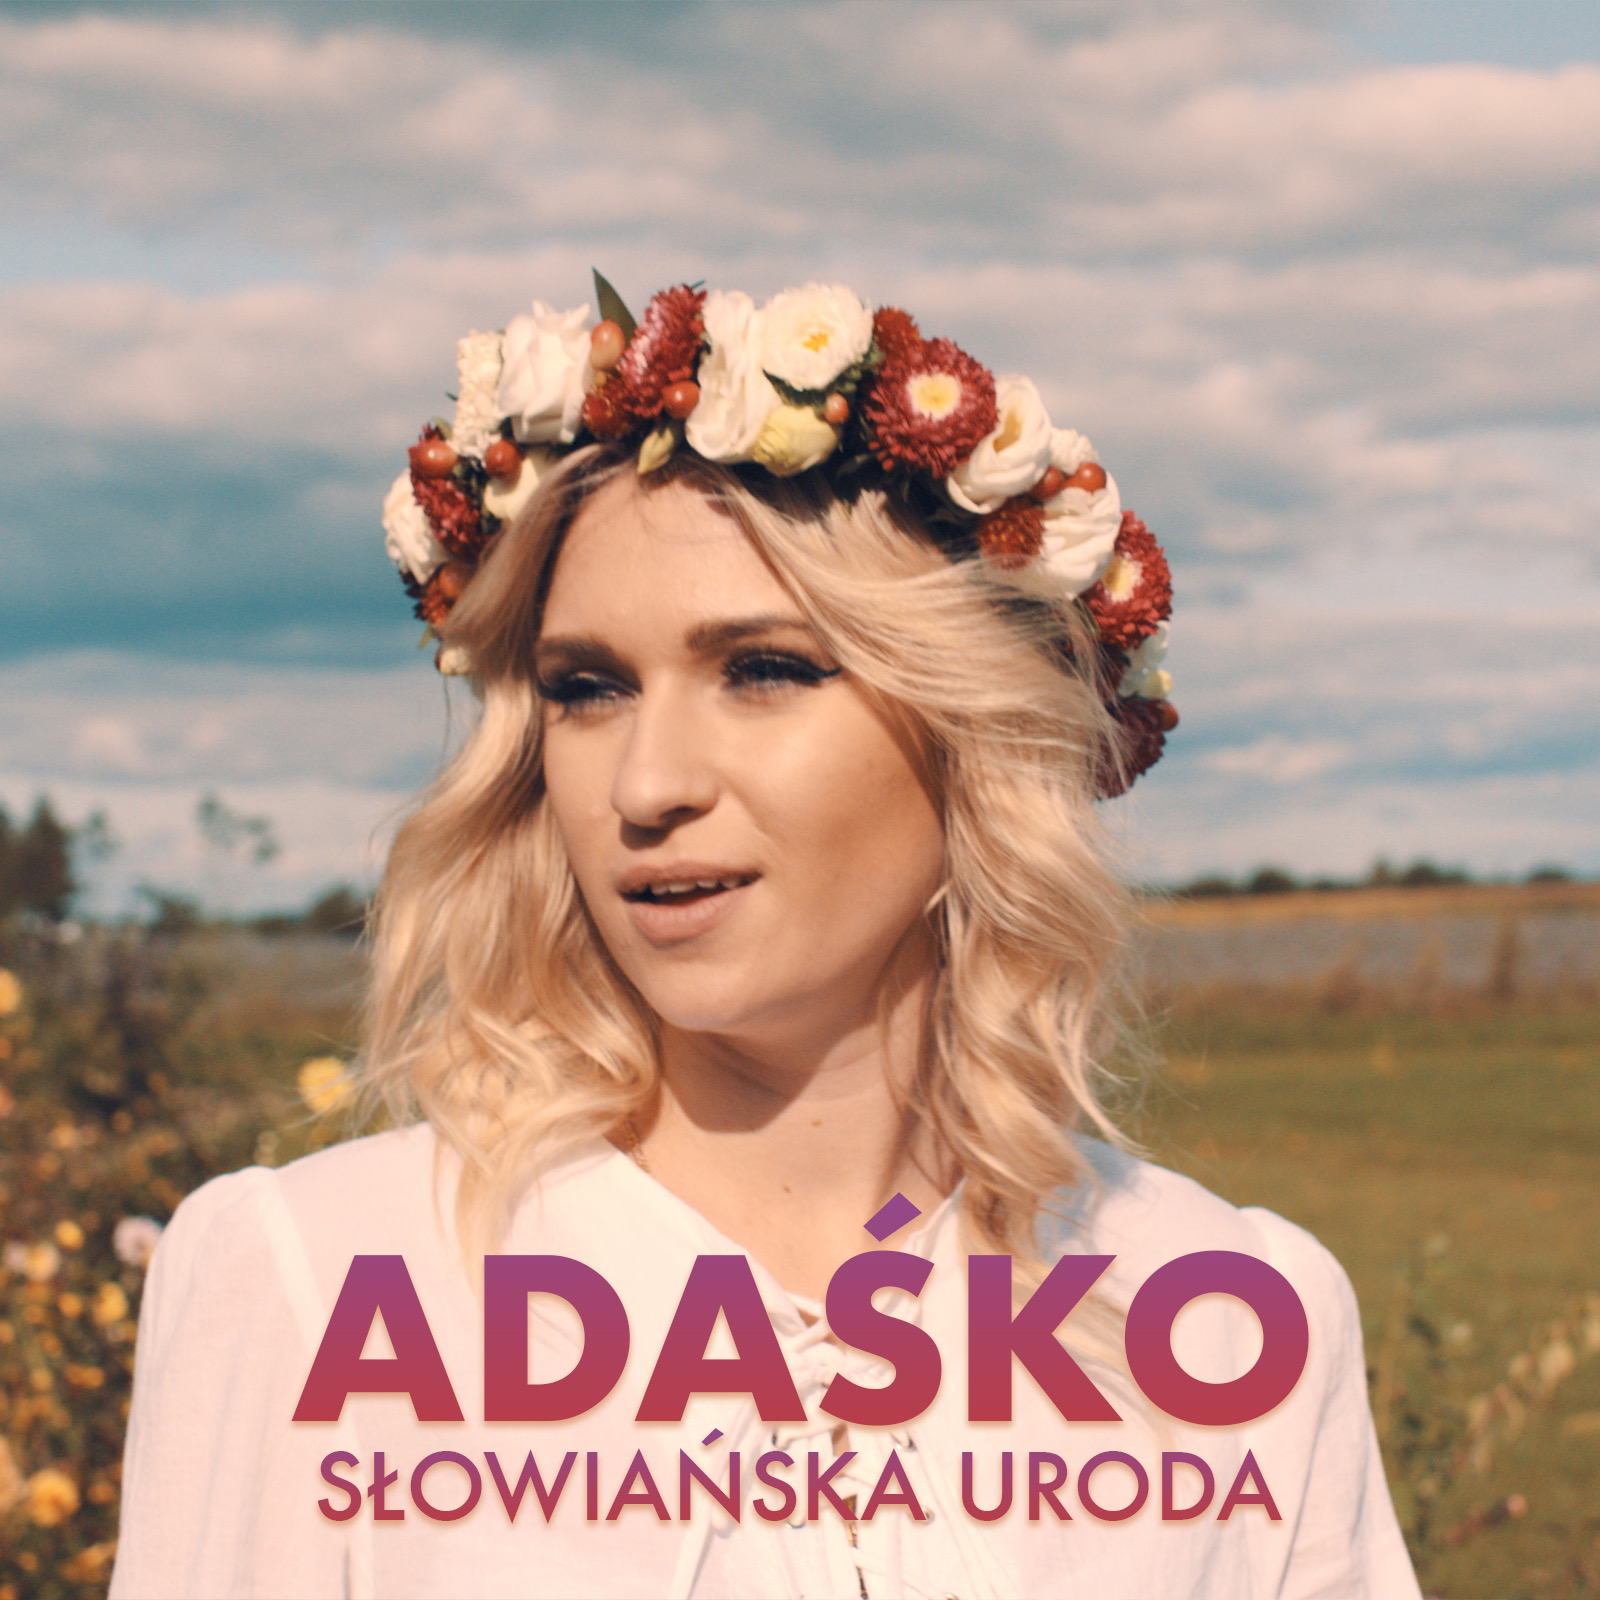 AdaŚko - Słowiańska uroda